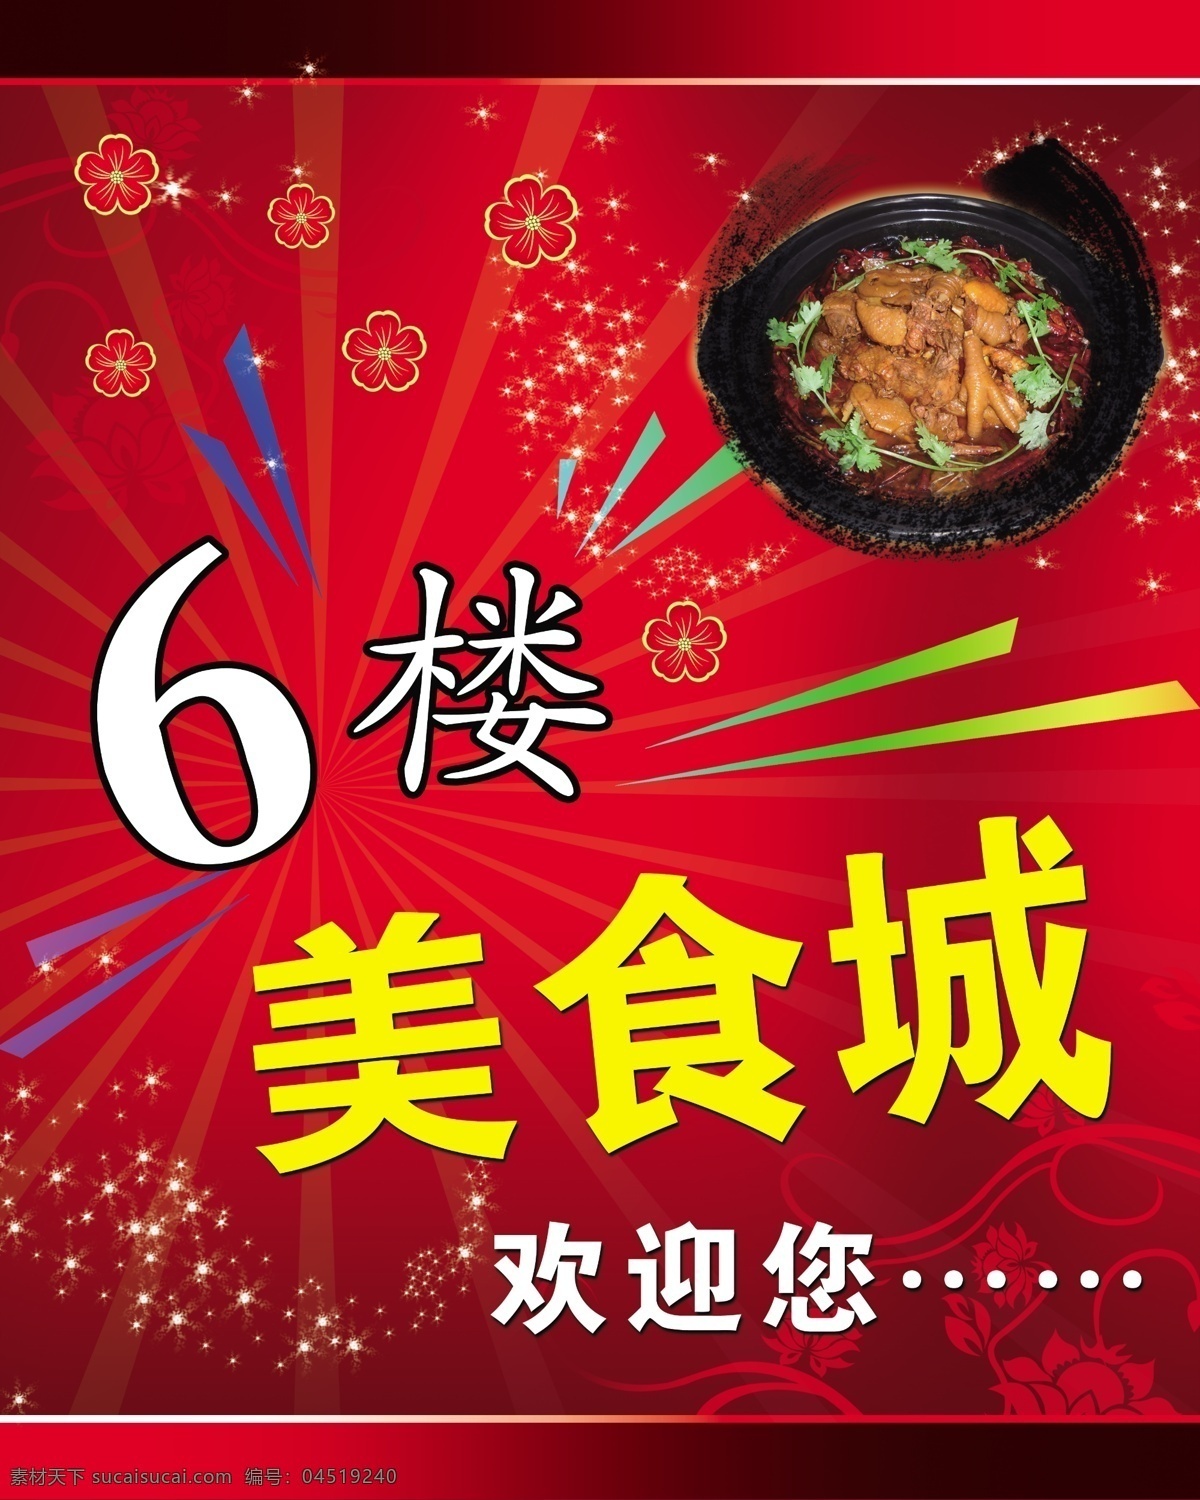 美食城 火锅 美食 美味 小吃 原创设计 原创海报